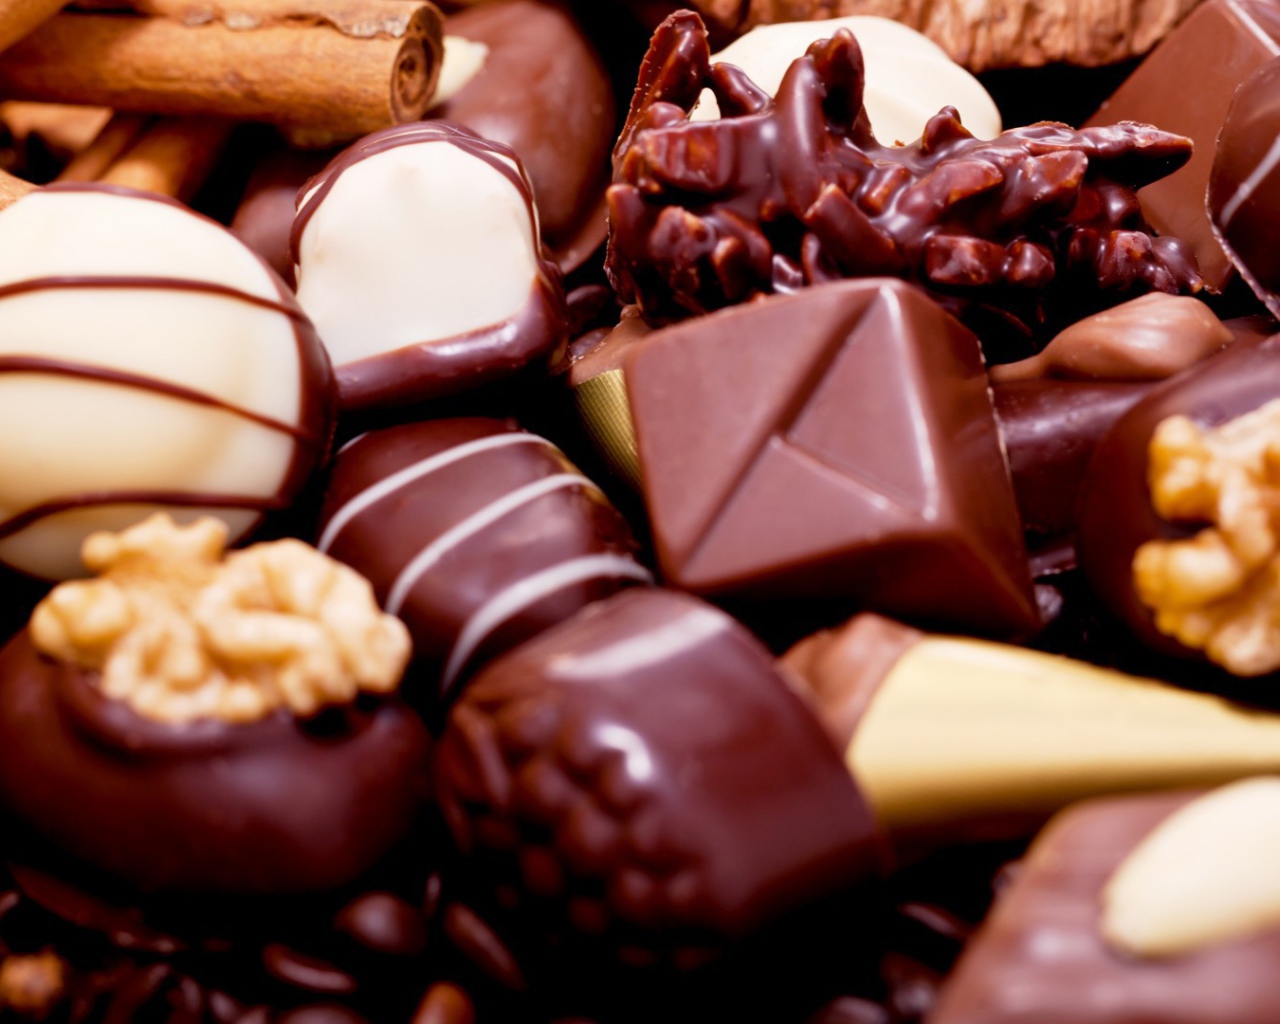 Разнообразные шоколадные конфеты